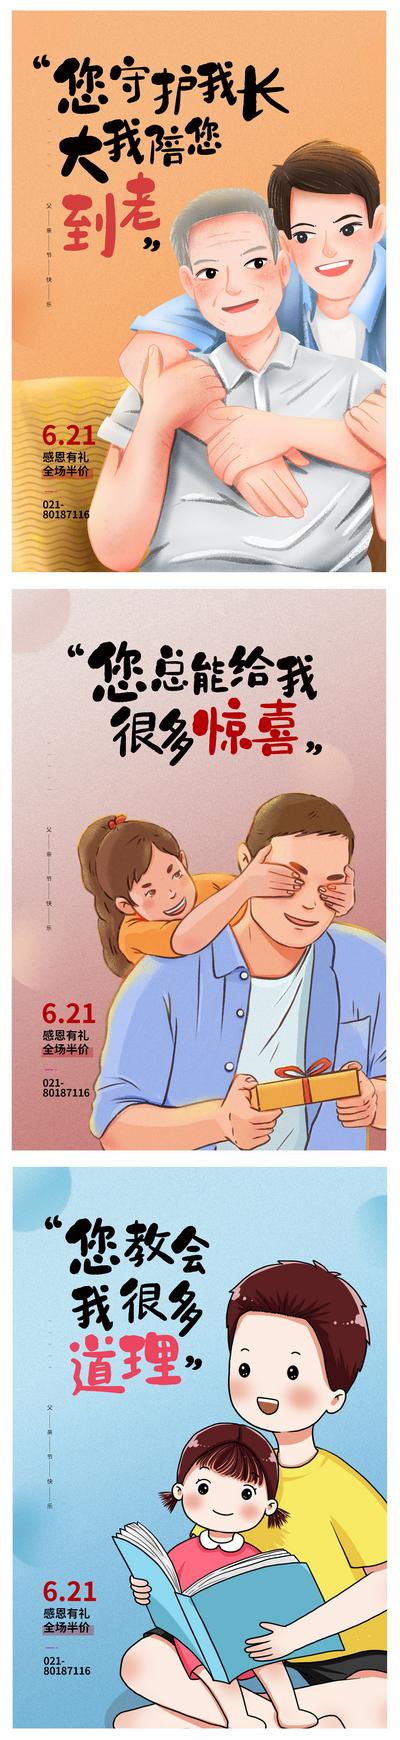 南门网 海报 公历节日 父亲节 父爱 感恩 陪伴  插画